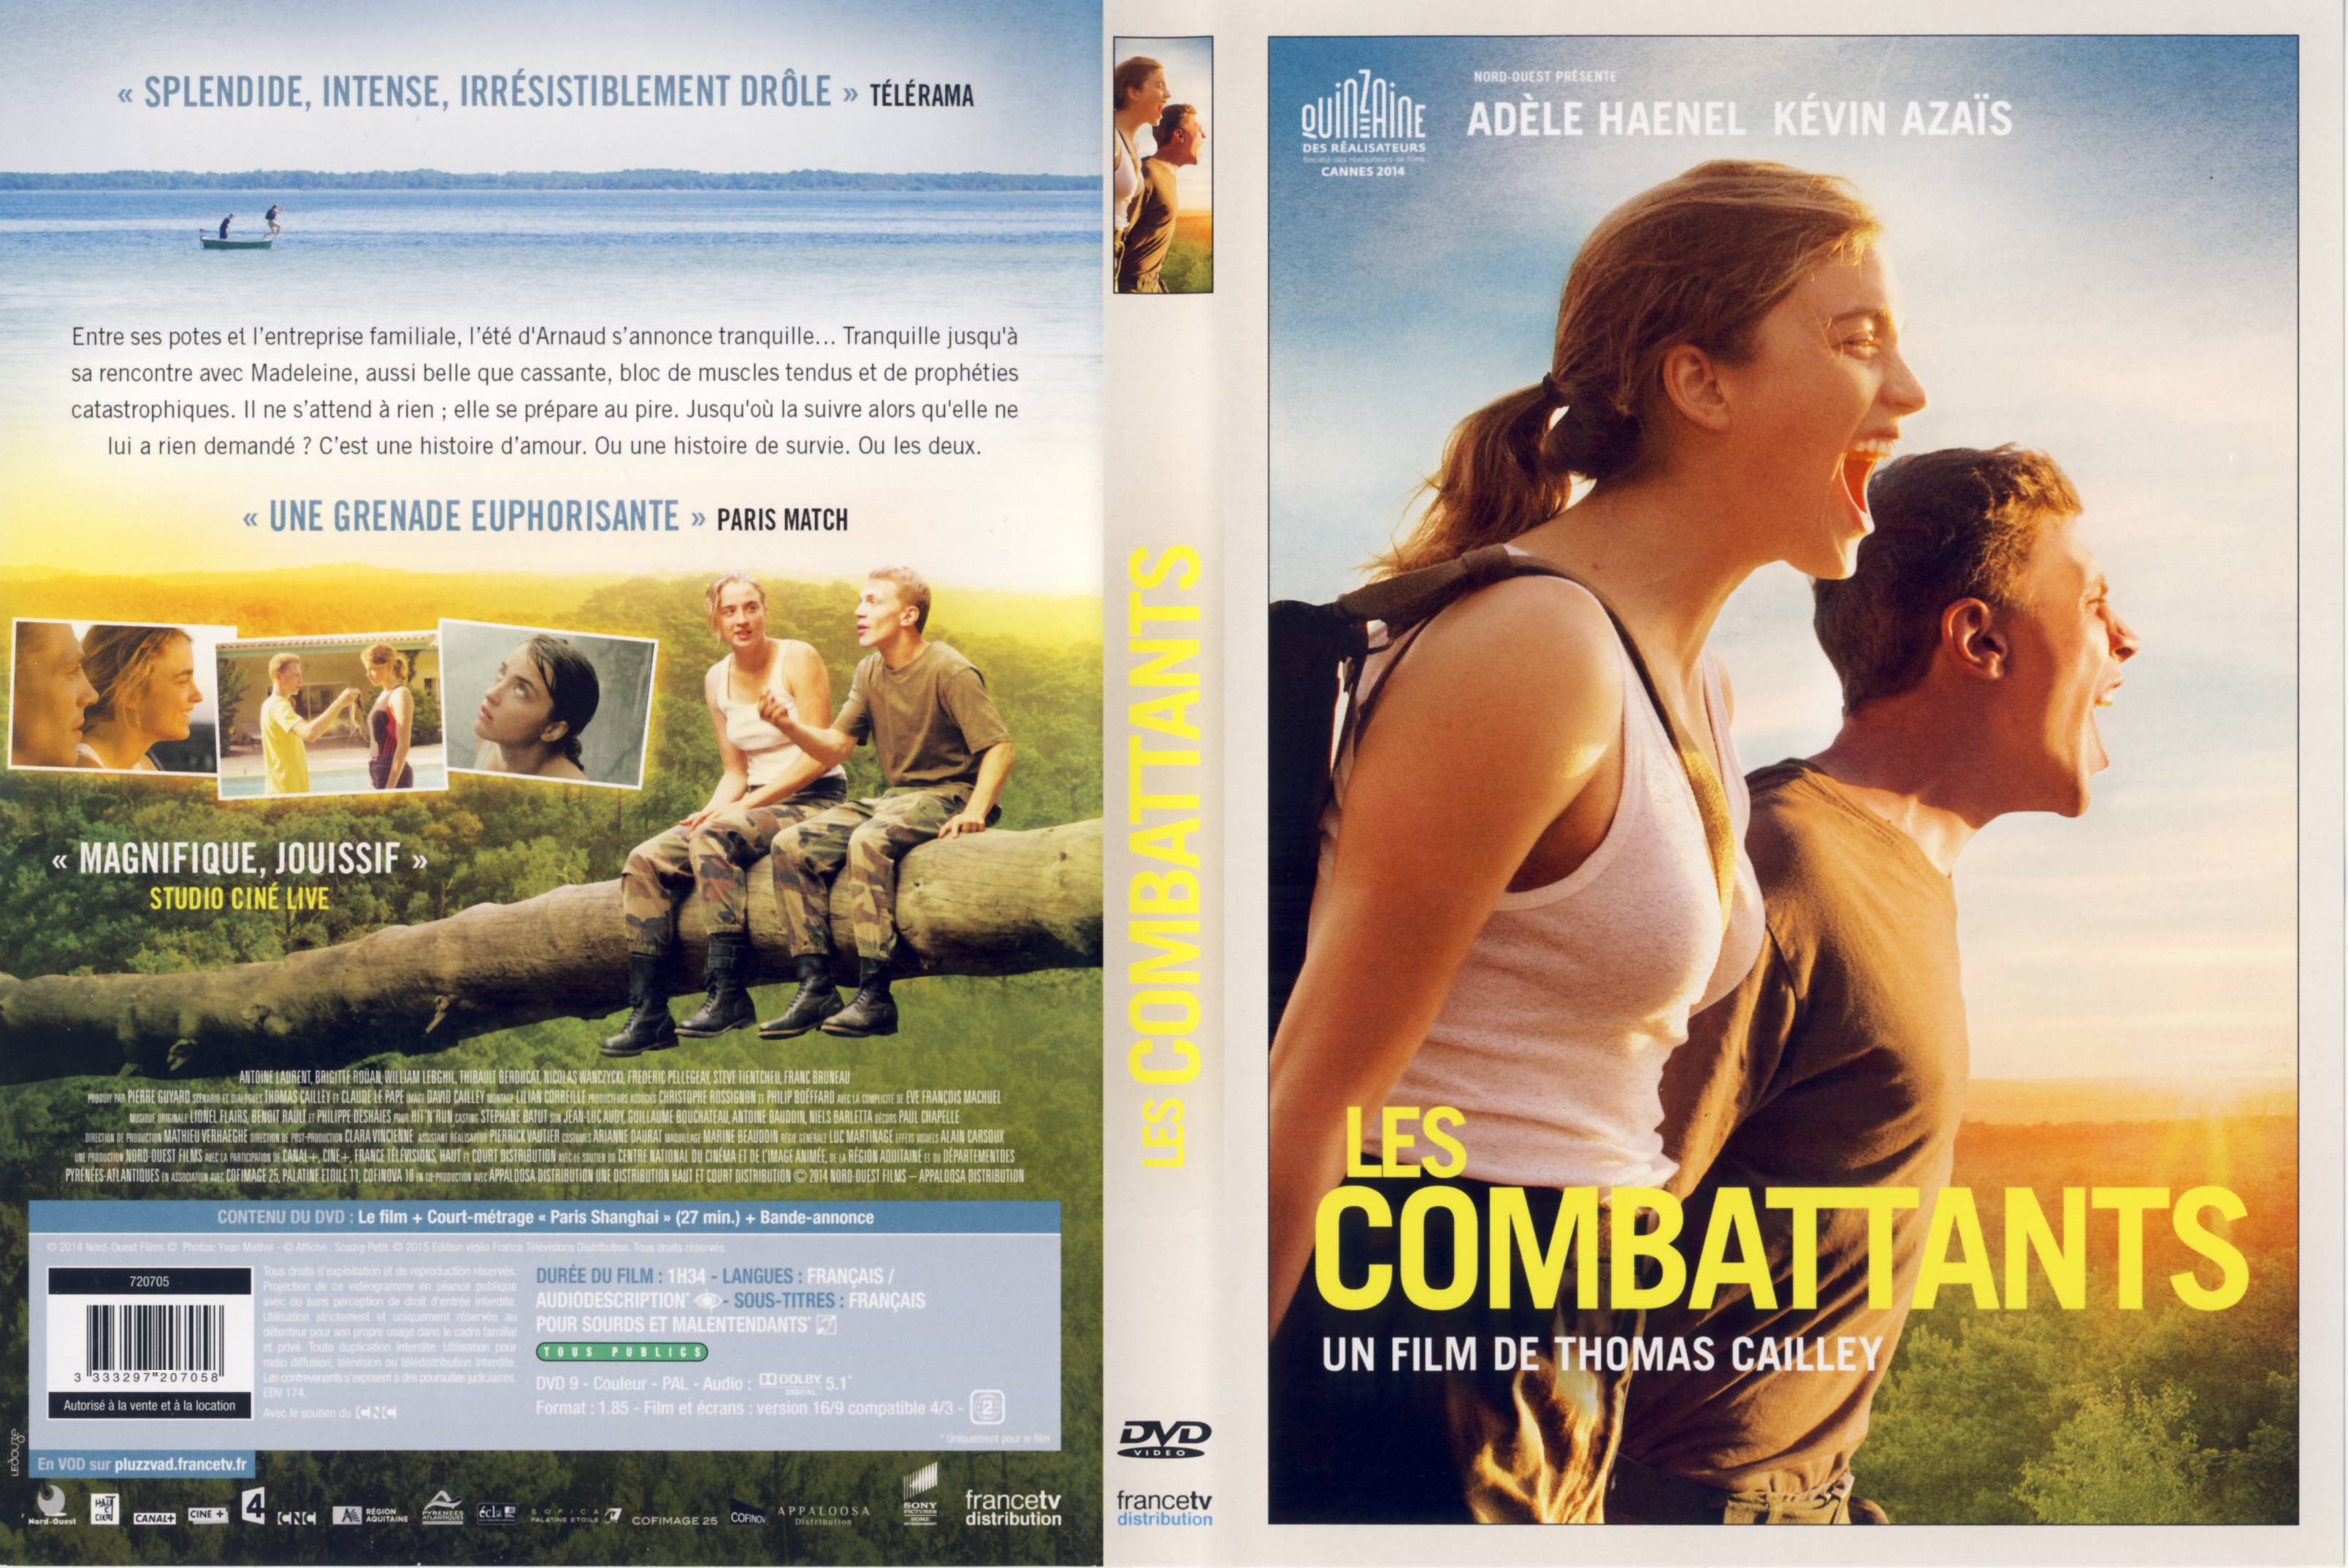 Jaquette DVD Les Combattants